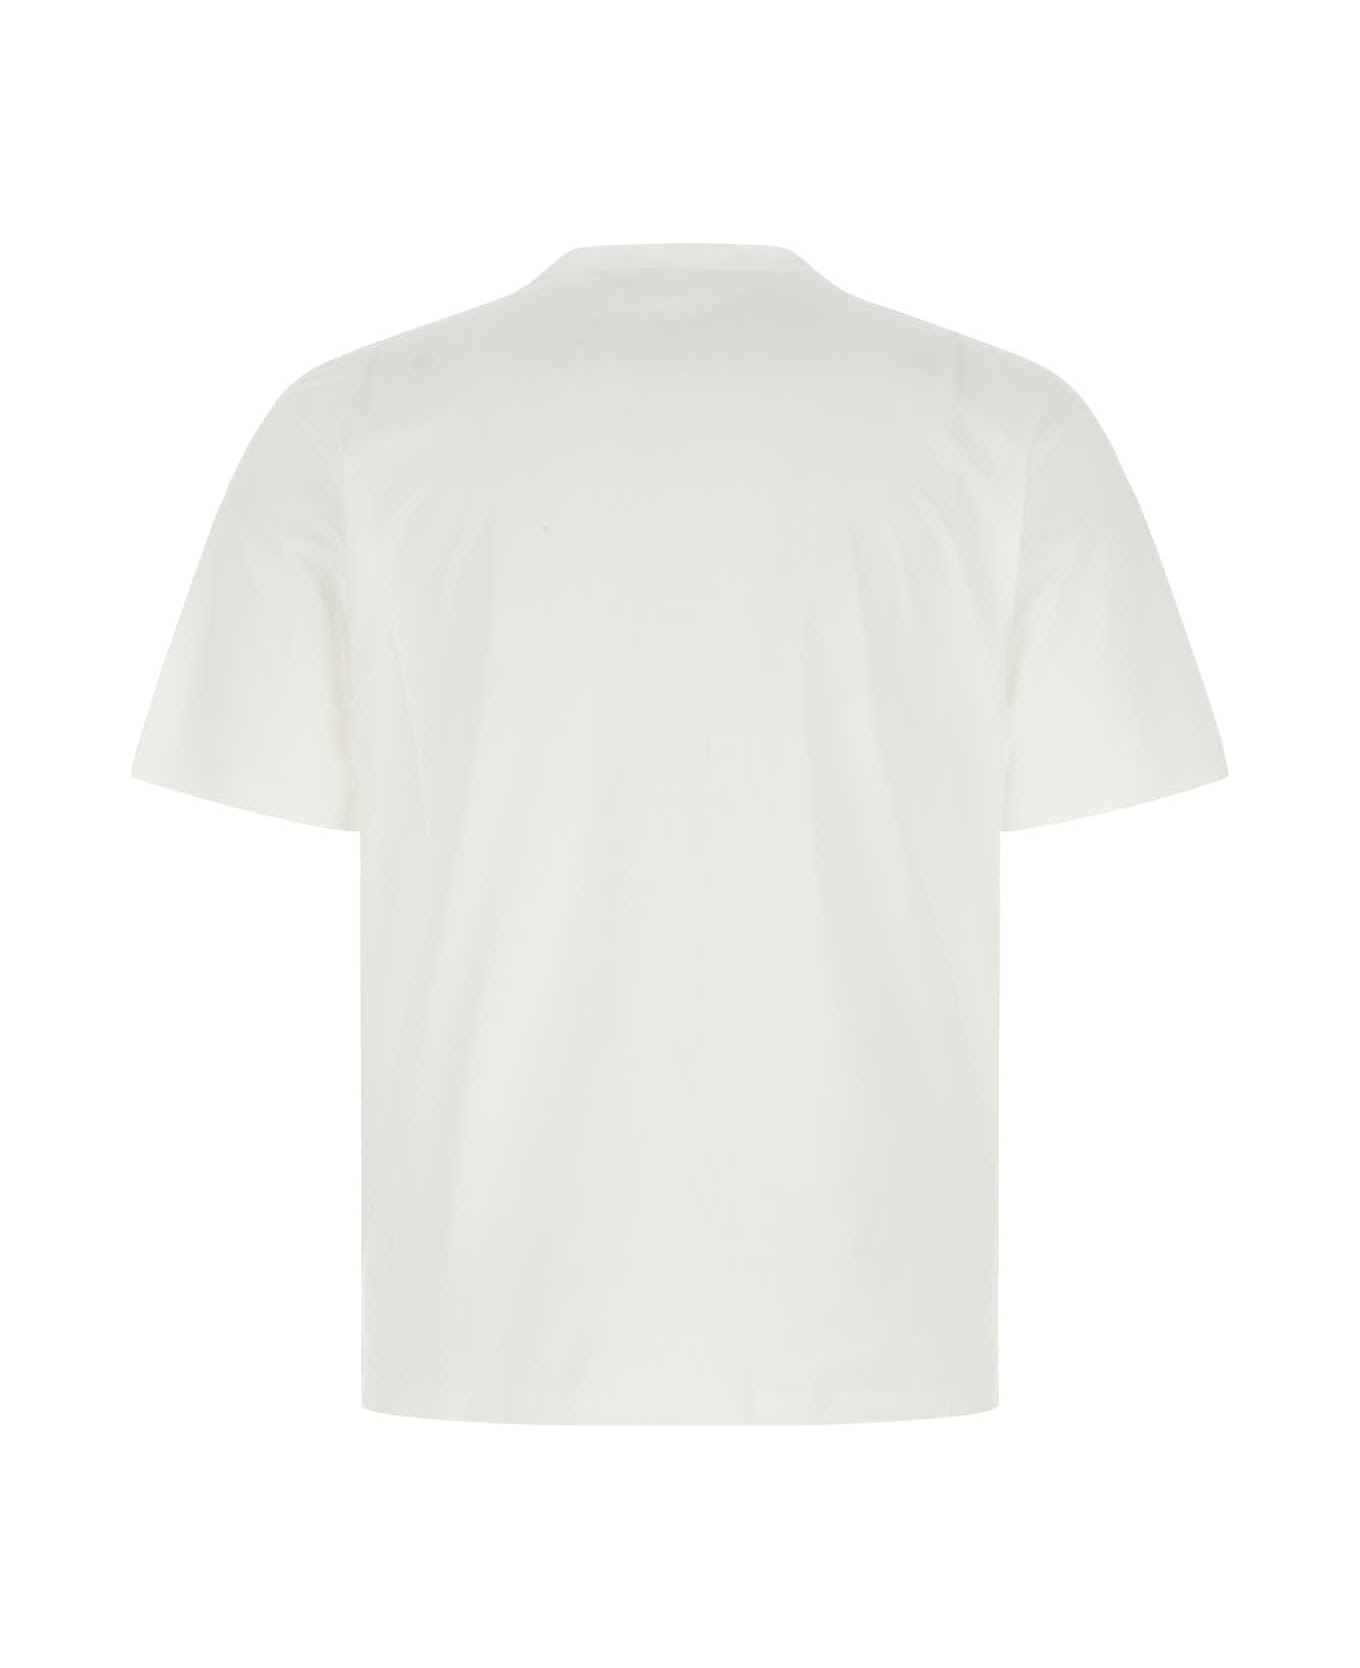 Prada White Cotton T-shirt - F0009